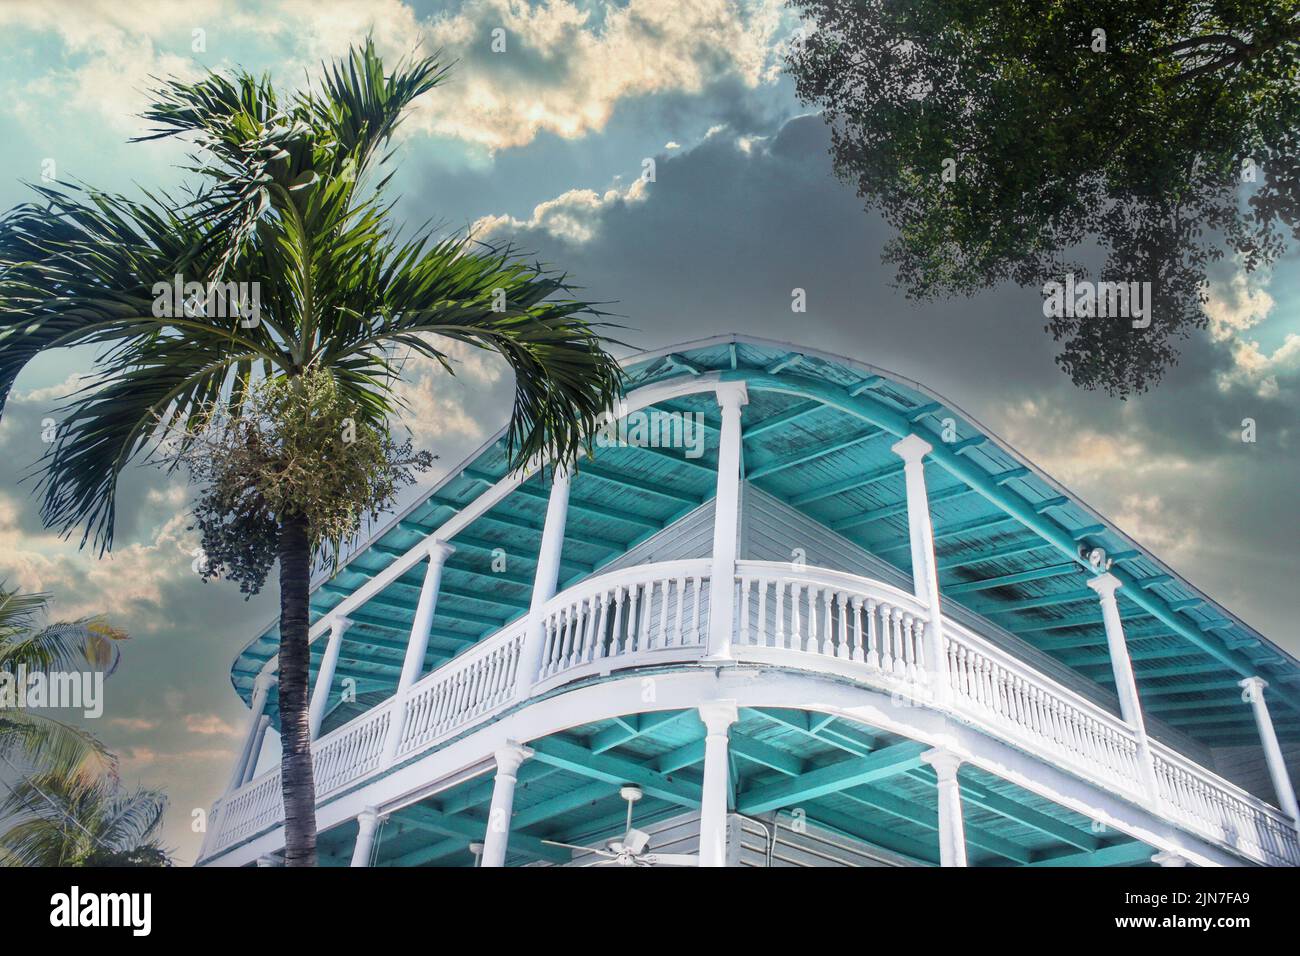 Edificio tropical turquesa con balcón alrededor contra el cielo tormentoso con palmeras - mirando hacia un ángulo - perspectiva Foto de stock